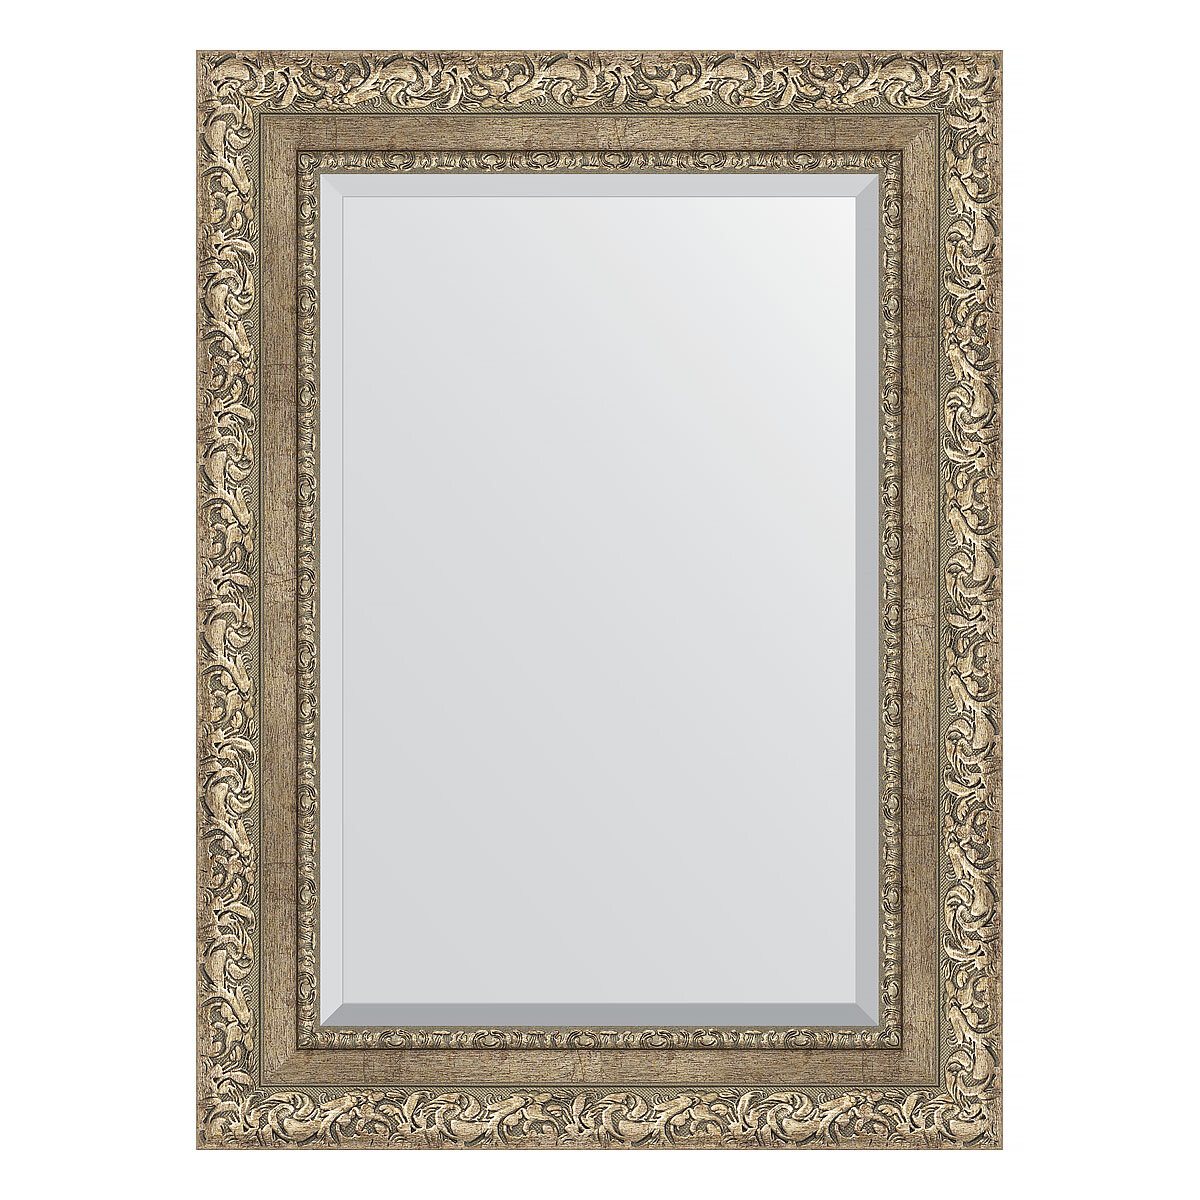 Зеркало настенное с фацетом EVOFORM в багетной раме виньетка античное серебро, 55х75 см, для гостиной, прихожей, спальни и ванной комнаты, BY 3383